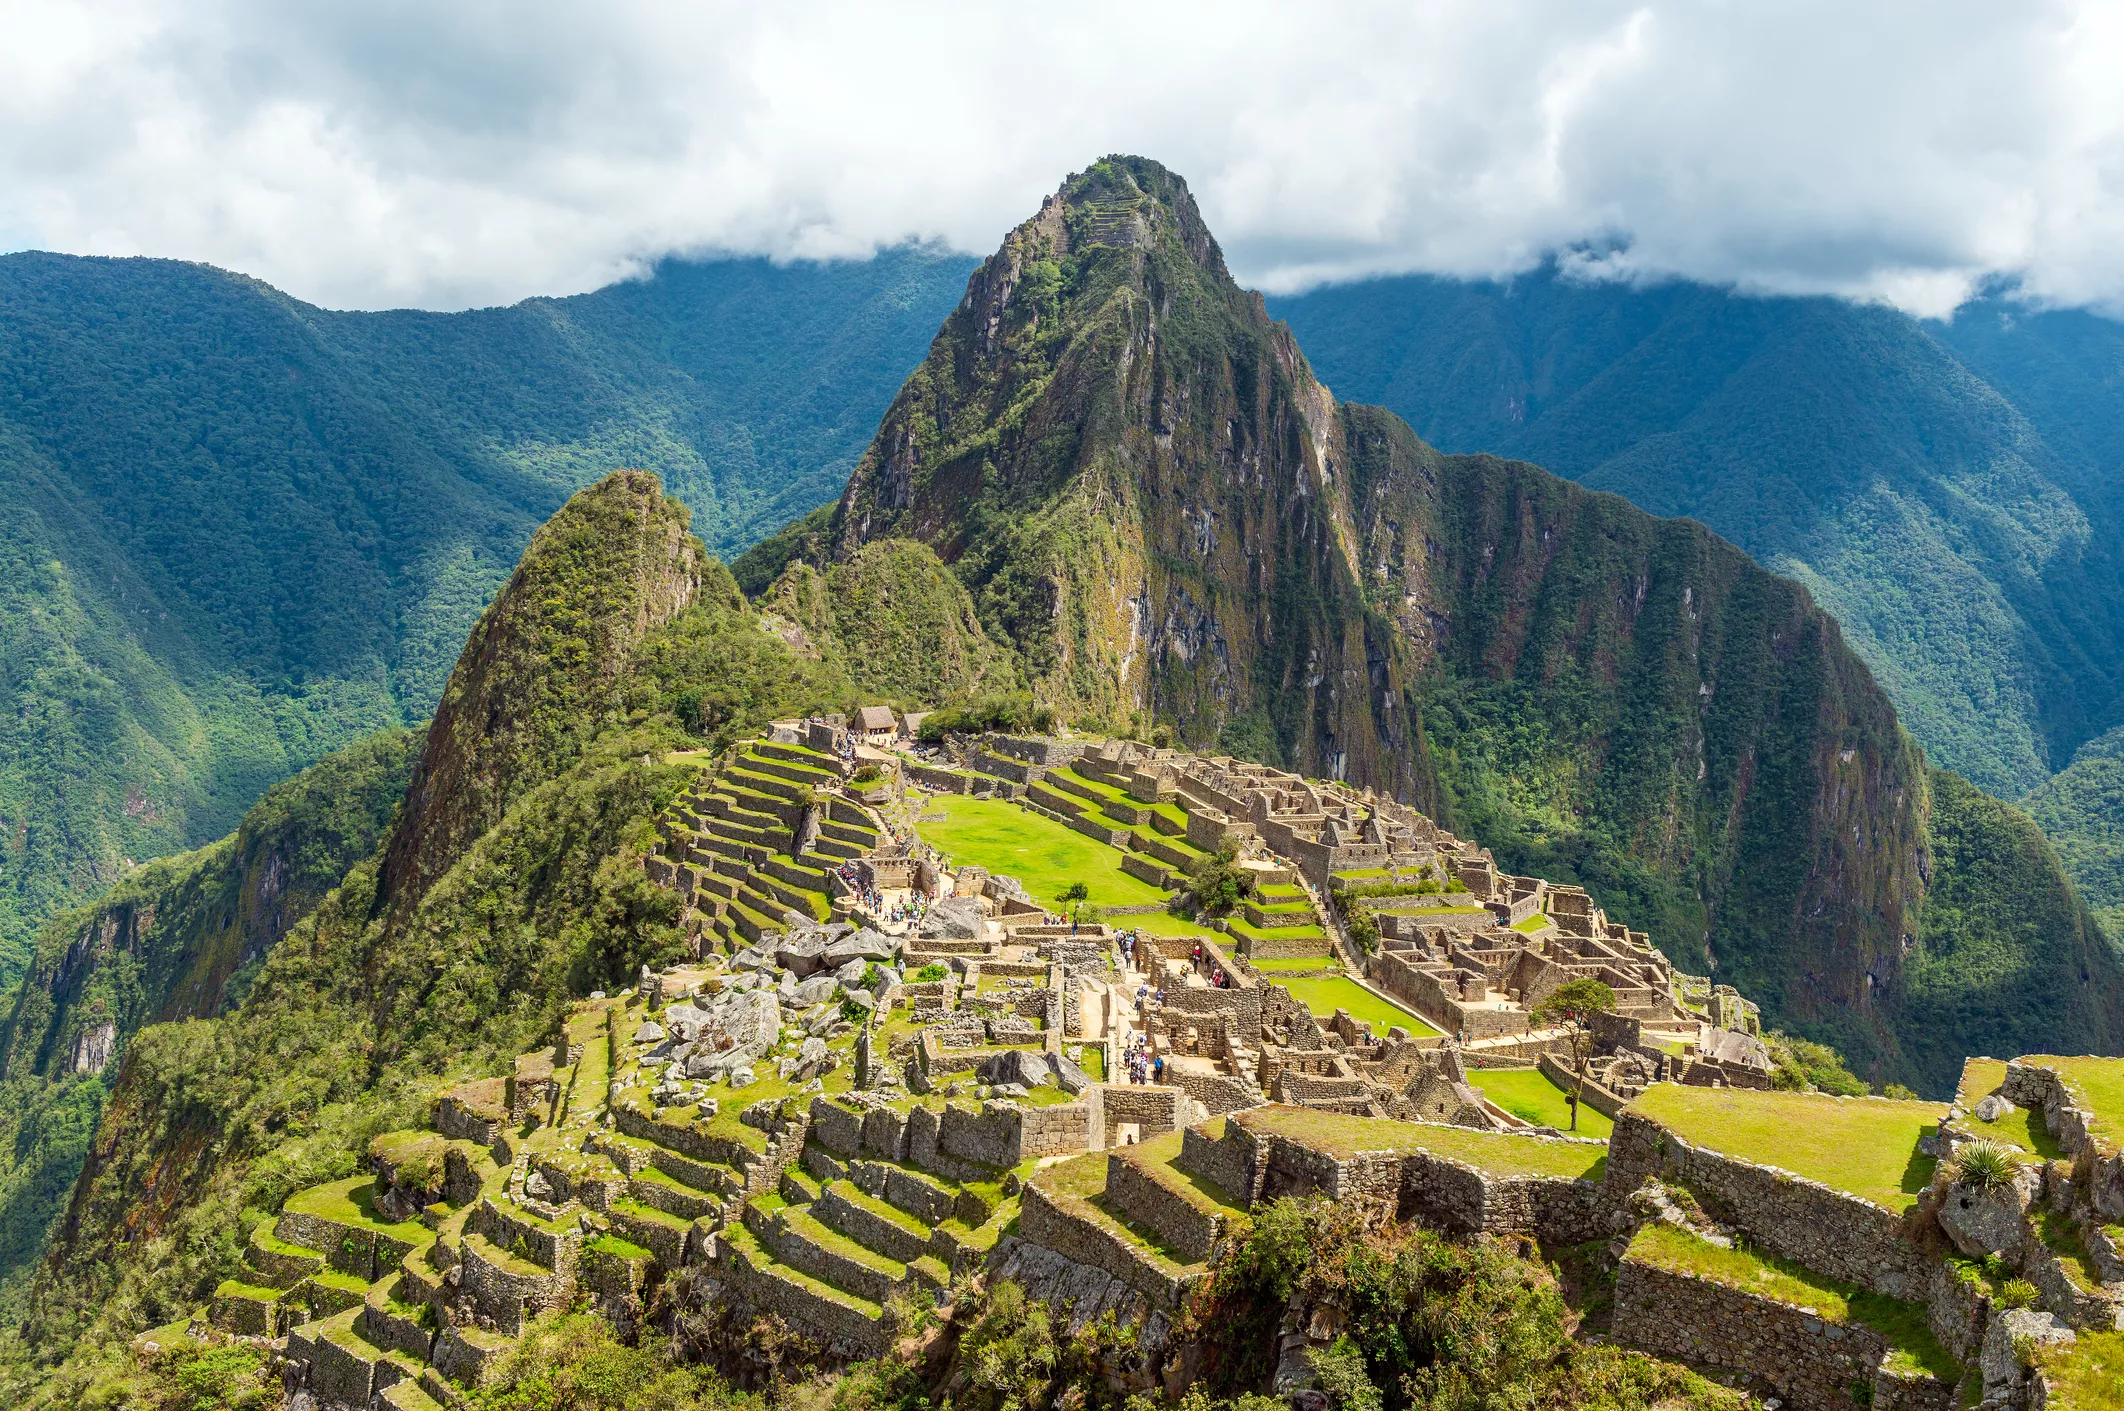 La serralada dels Andes va ser la cuna de la civilització mítica dels inques